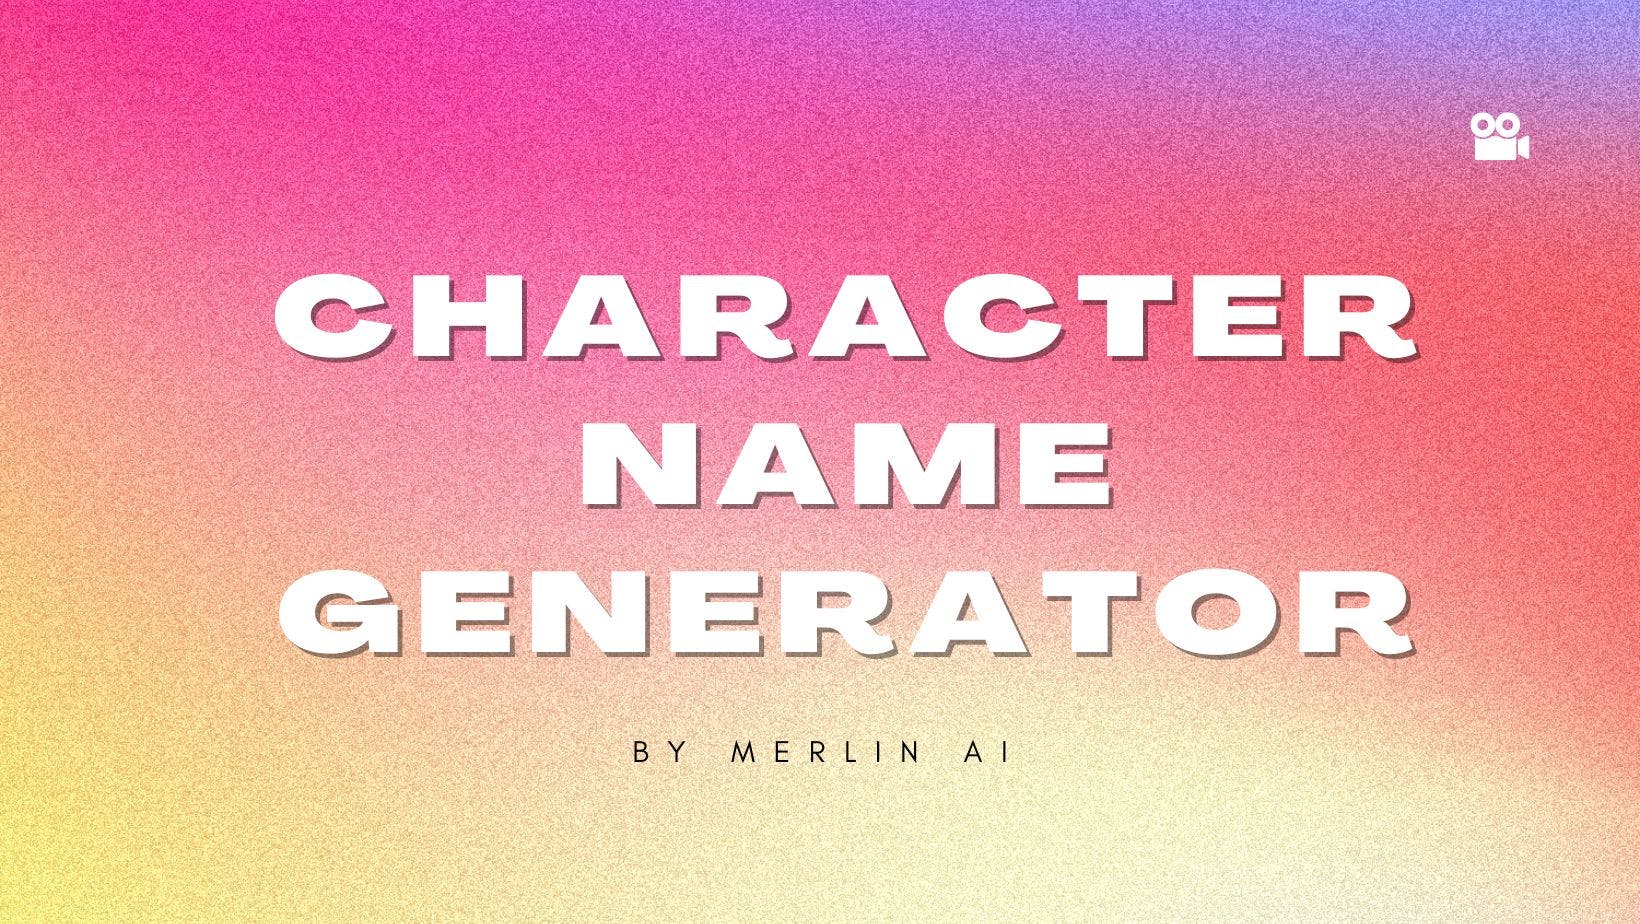 Cover Image for Générateur gratuit de noms de personnages par Merlin AI